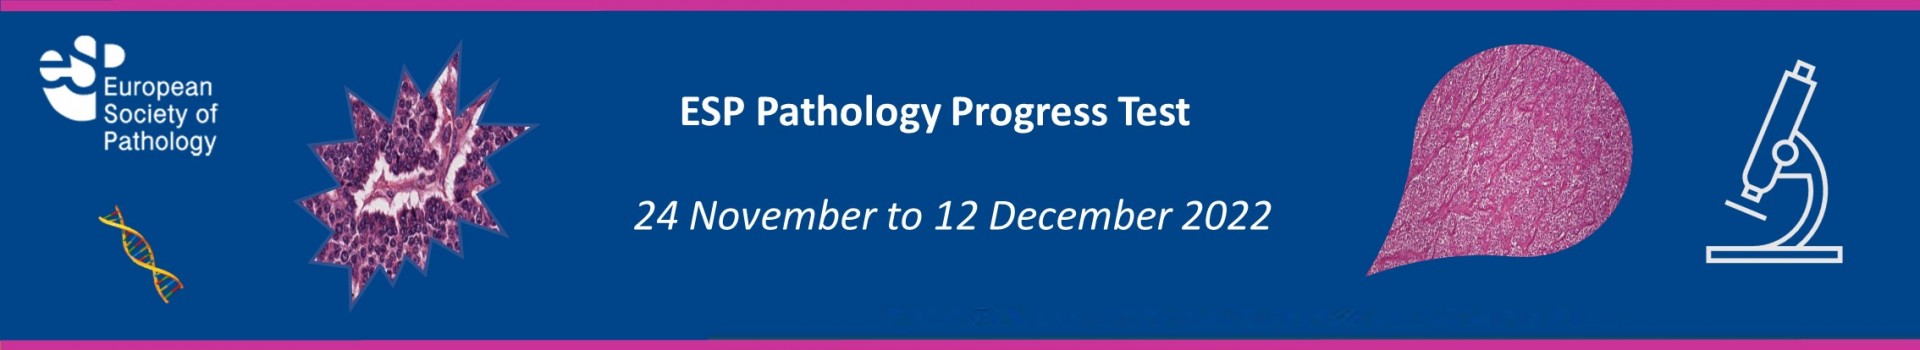 Pathology Progress Test 2022